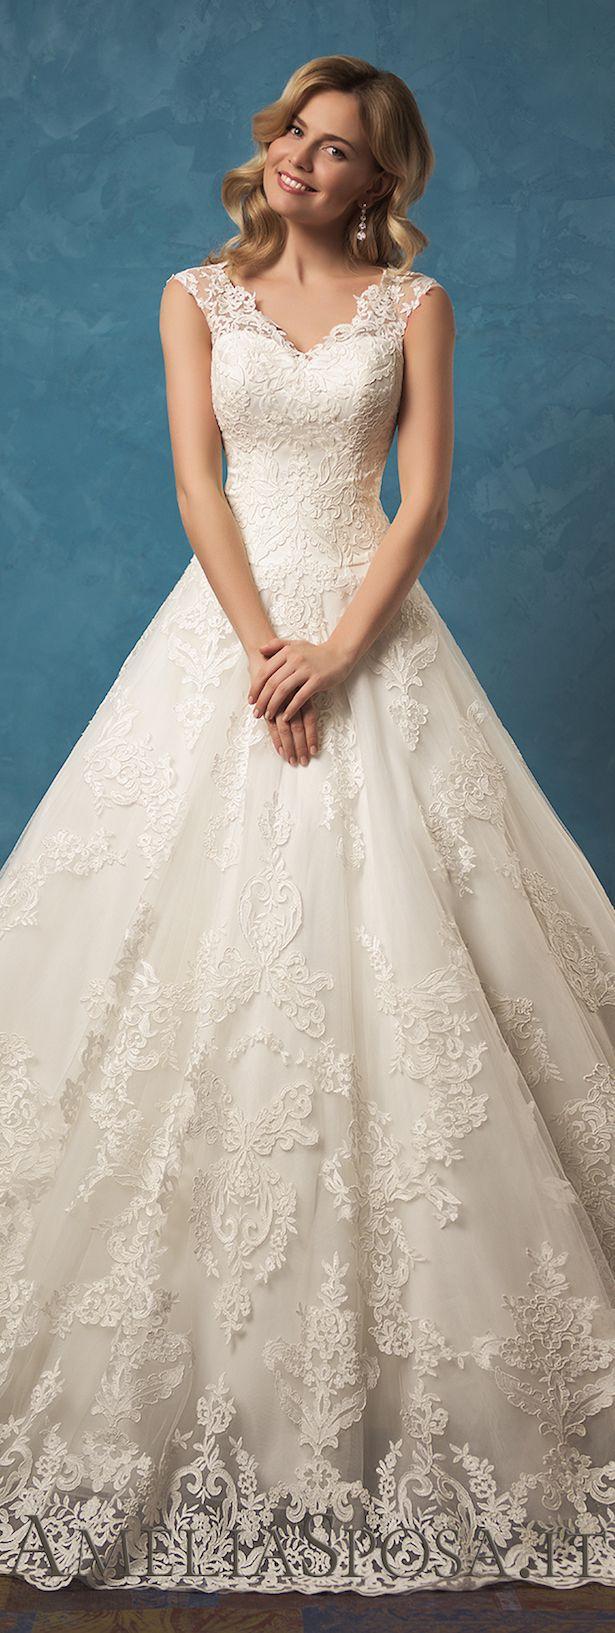 زفاف - Amelia Sposa 2017 Wedding Dress